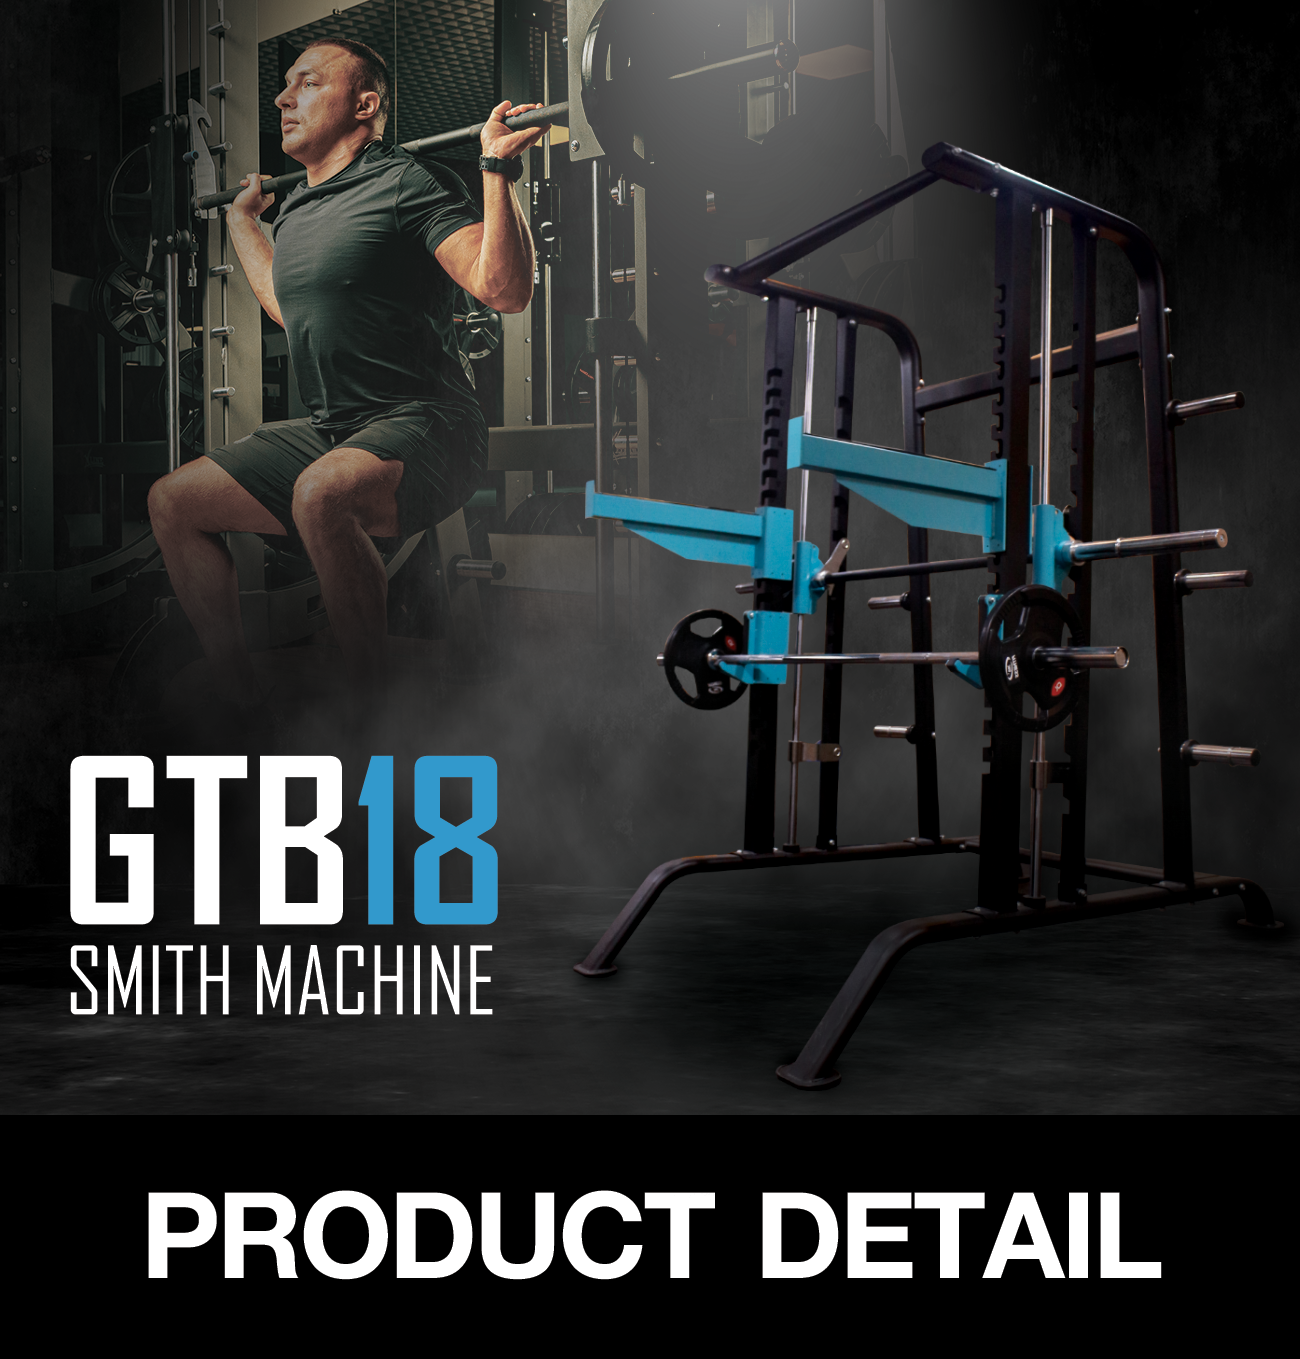 อุปกรณ์ฝึกกล้ามเนื้อ SMITH MACHINE GTB18